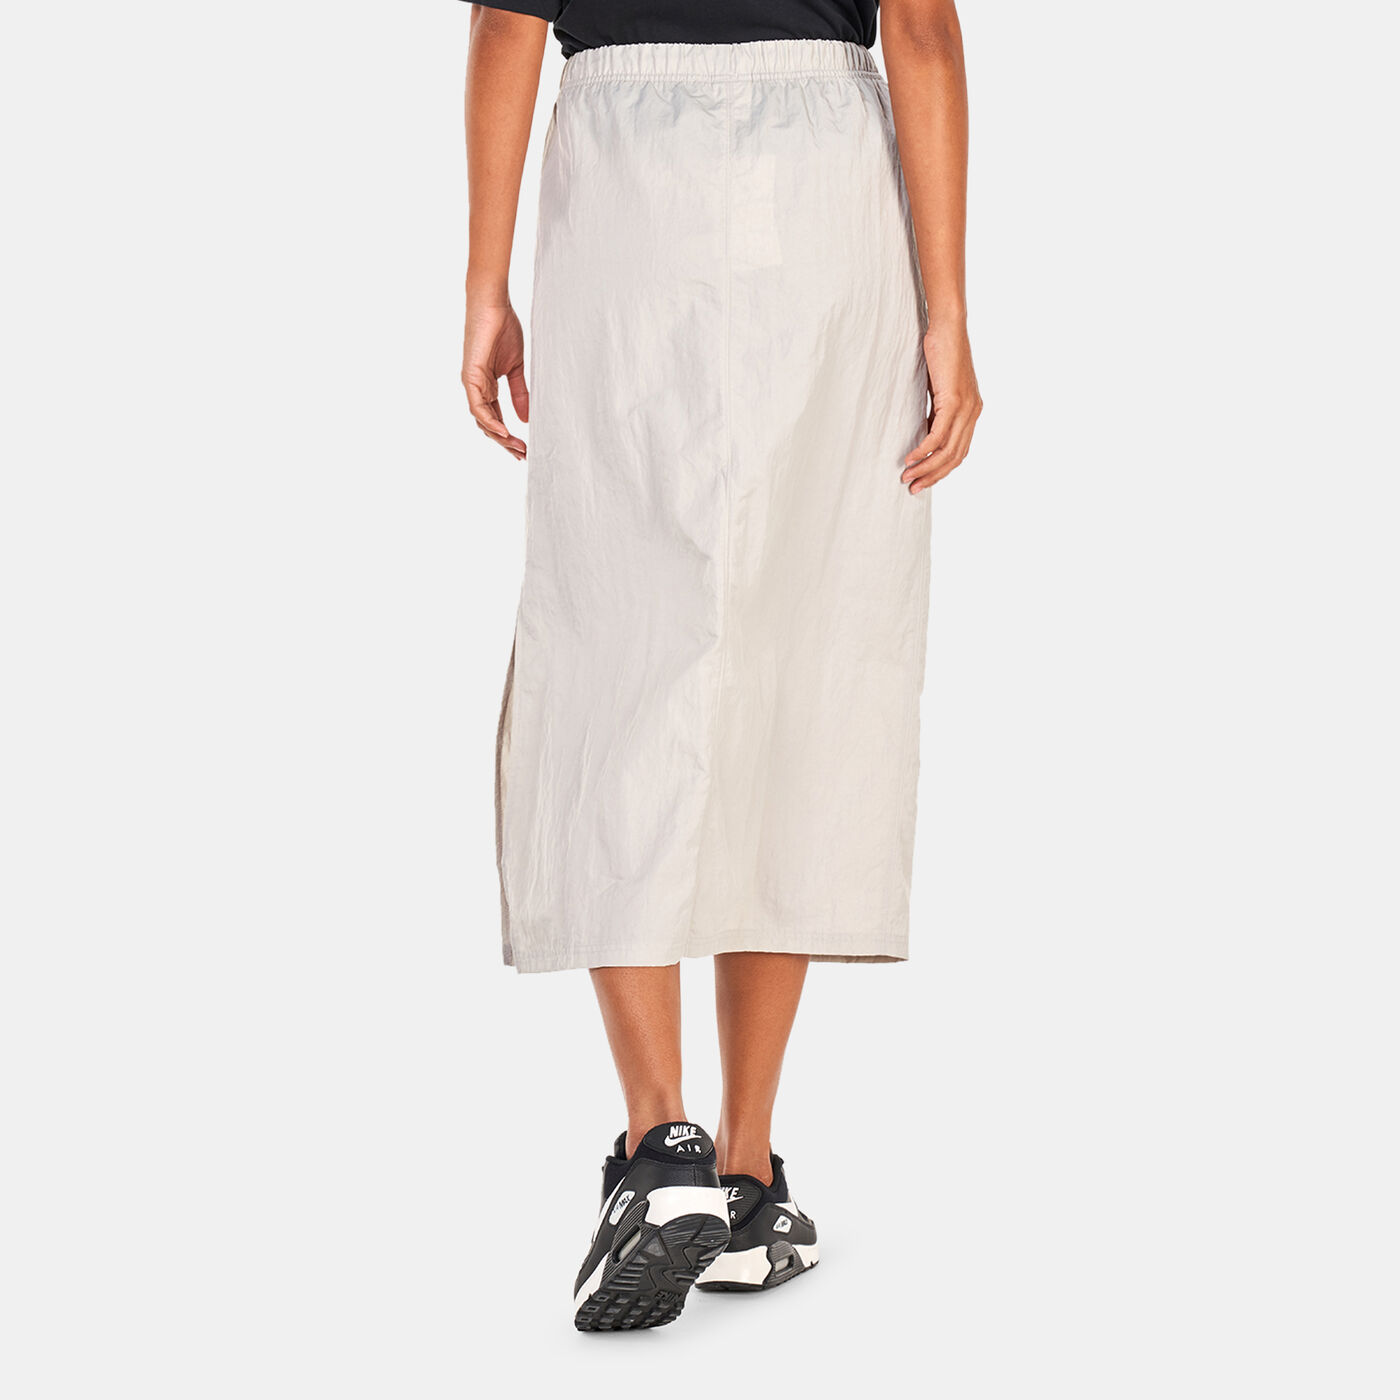 Women's Sportswear Essential High-Waisted Woven Skirt